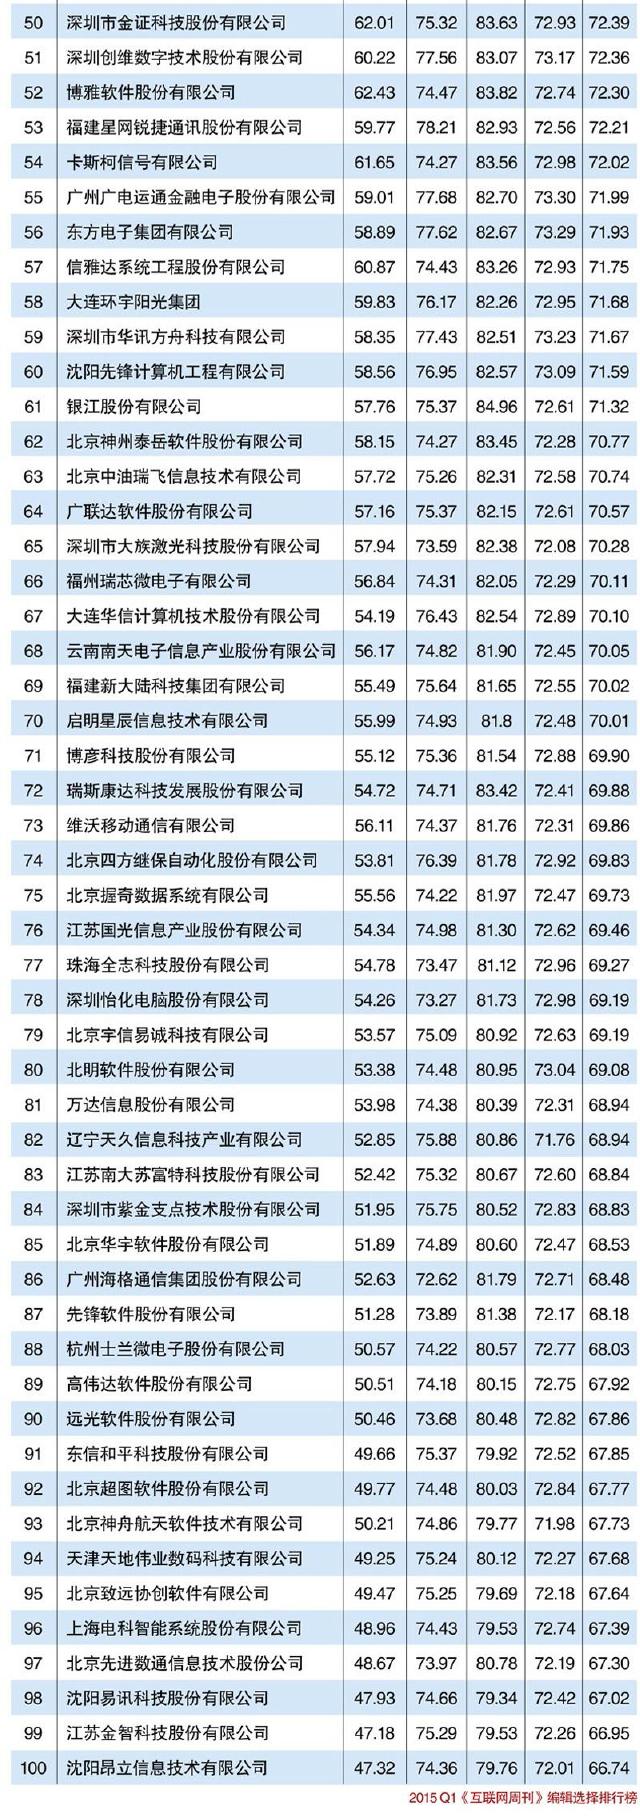 2015中国创新型软件公司TOP100排行榜(2015